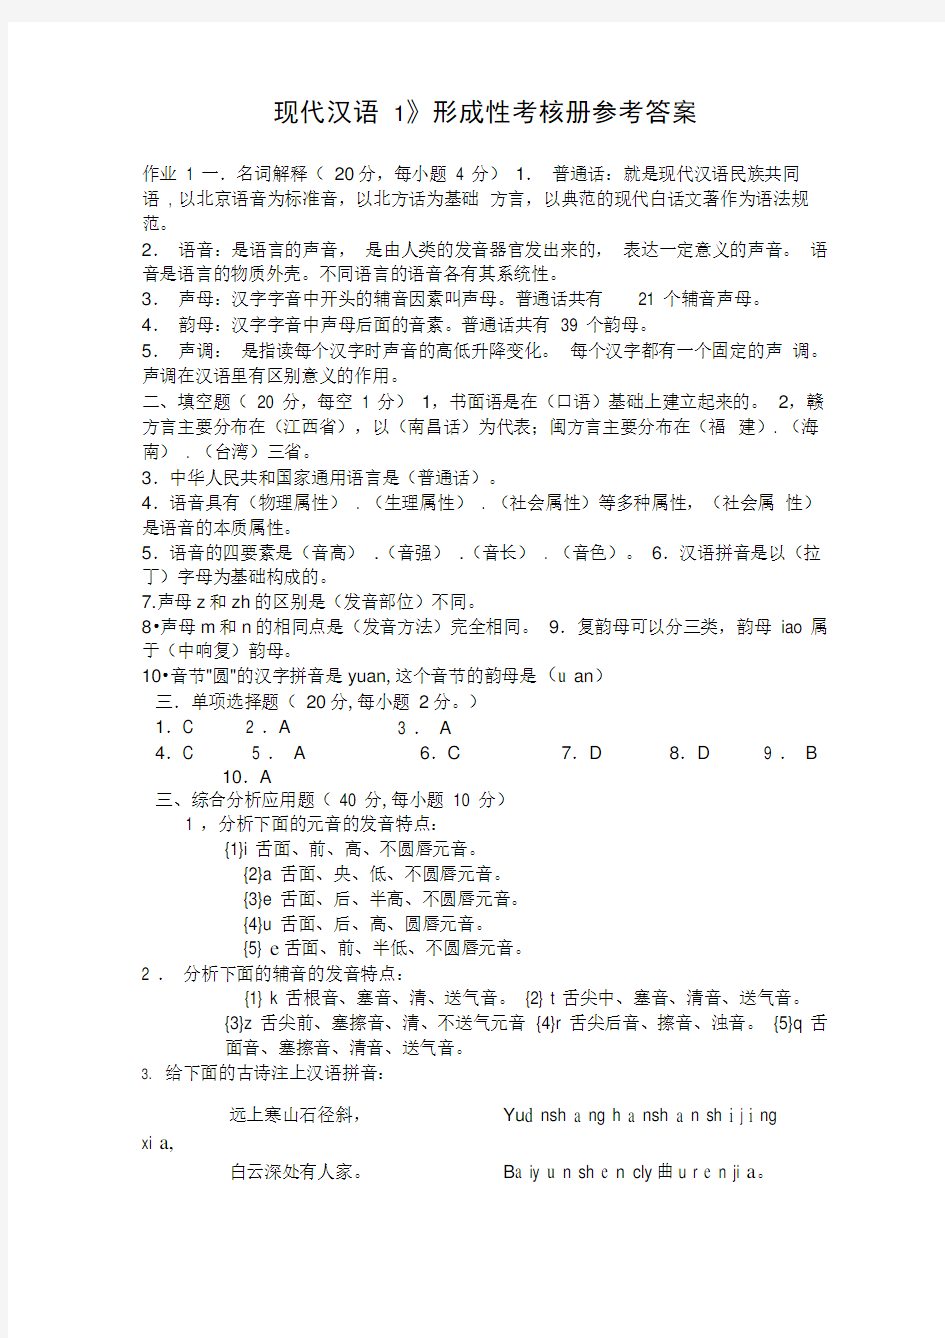 《现代汉语1》形成性考核册参考答案